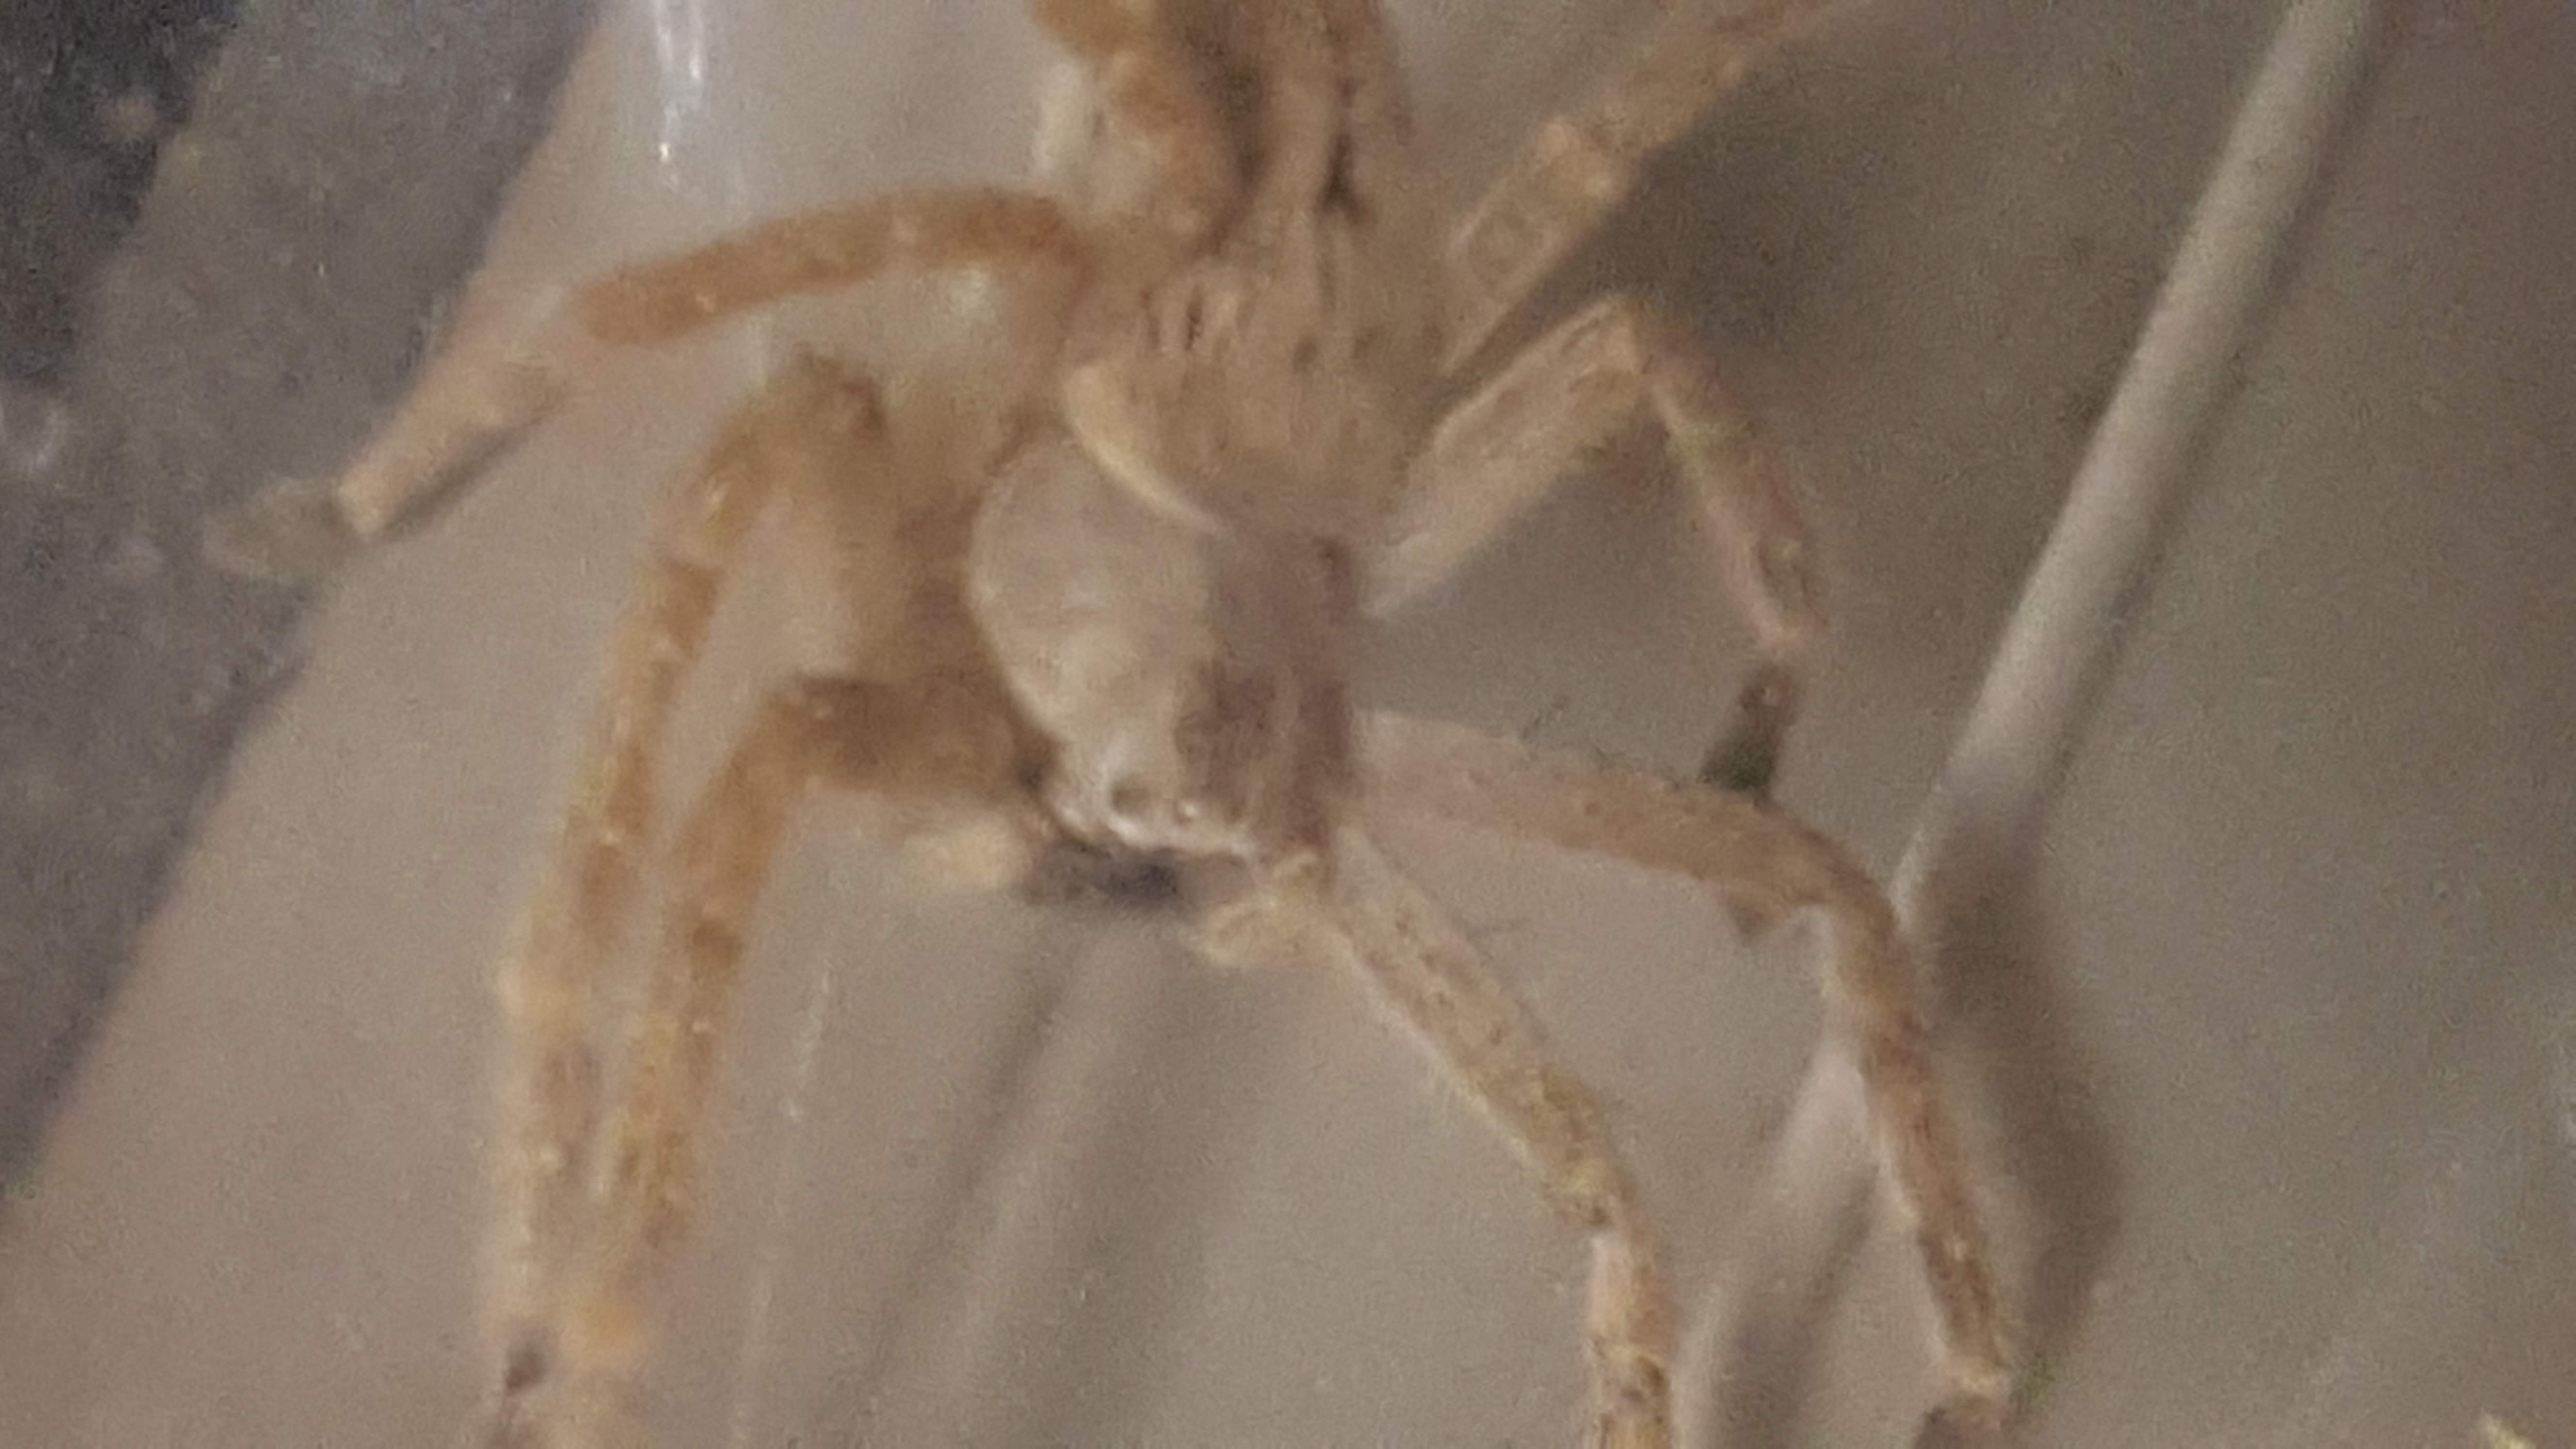 Picture of Olios giganteus (Giant Crab Spider) - Dorsal